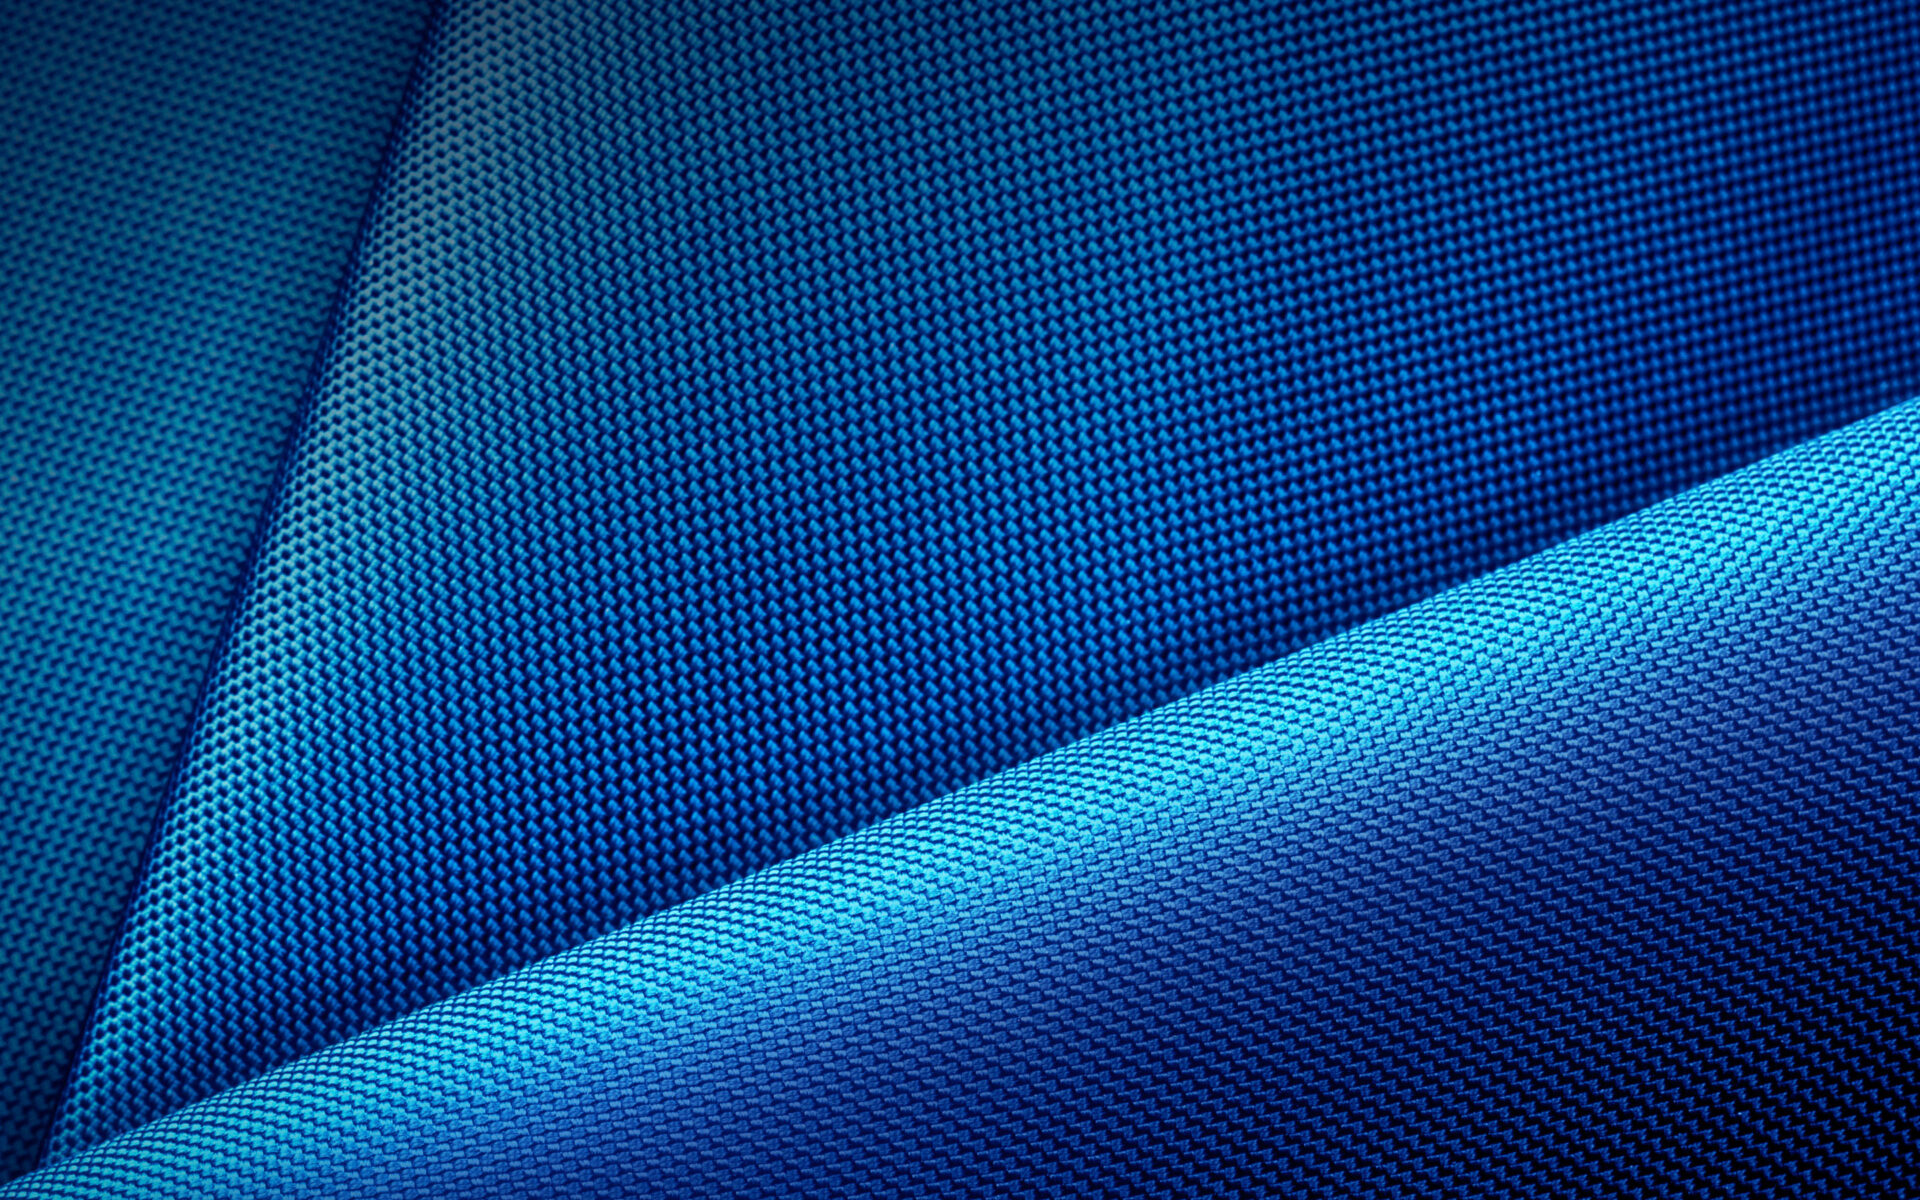 Blue Fabric Pattern9578819438 - Blue Fabric Pattern - Pattern, Gradient, Fabric, blue